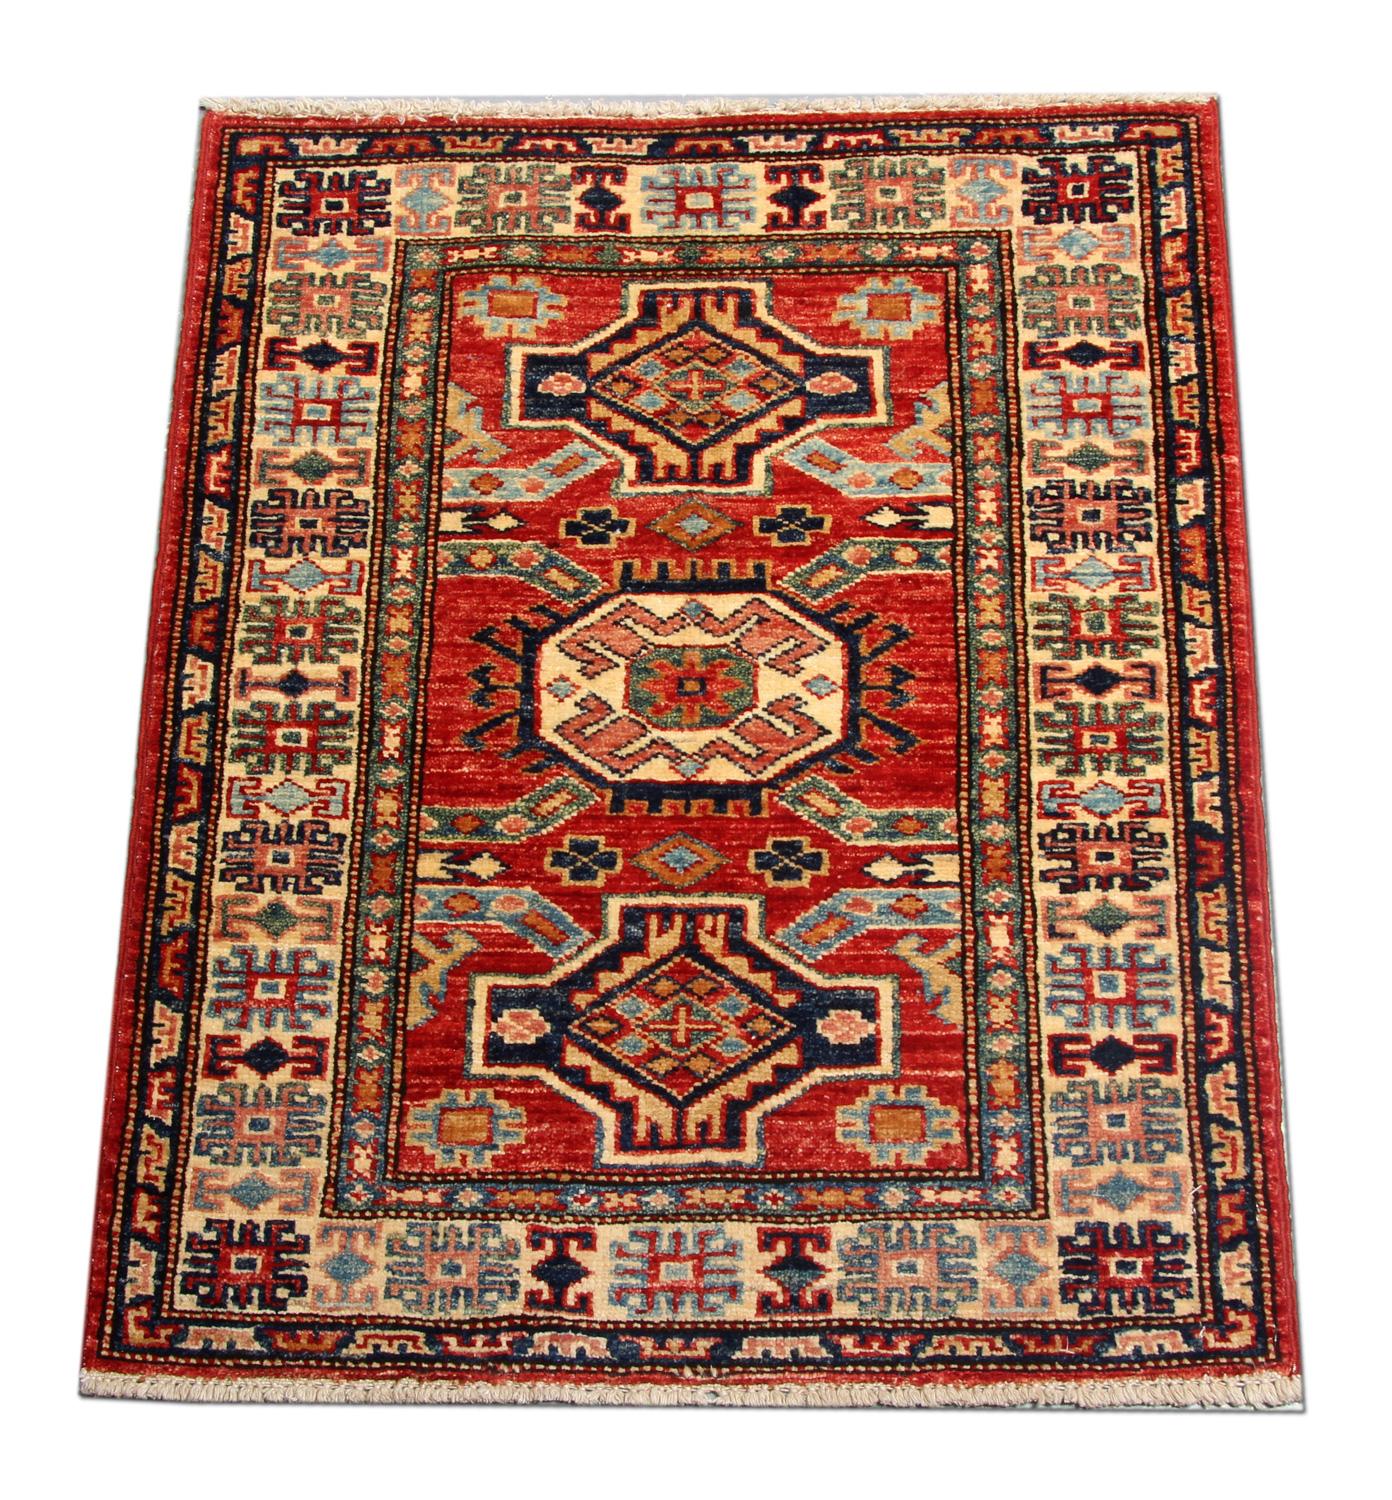 Diese kleinen, neuen, traditionellen, handgefertigten Teppiche zeigen Designs aus der Region Kazak. Ein konventioneller Stammesteppich ist im Kazak-Gebiet berühmt. Afghanische Knüpfer haben diesen handgewebten Teppich aus hochwertiger Wolle und